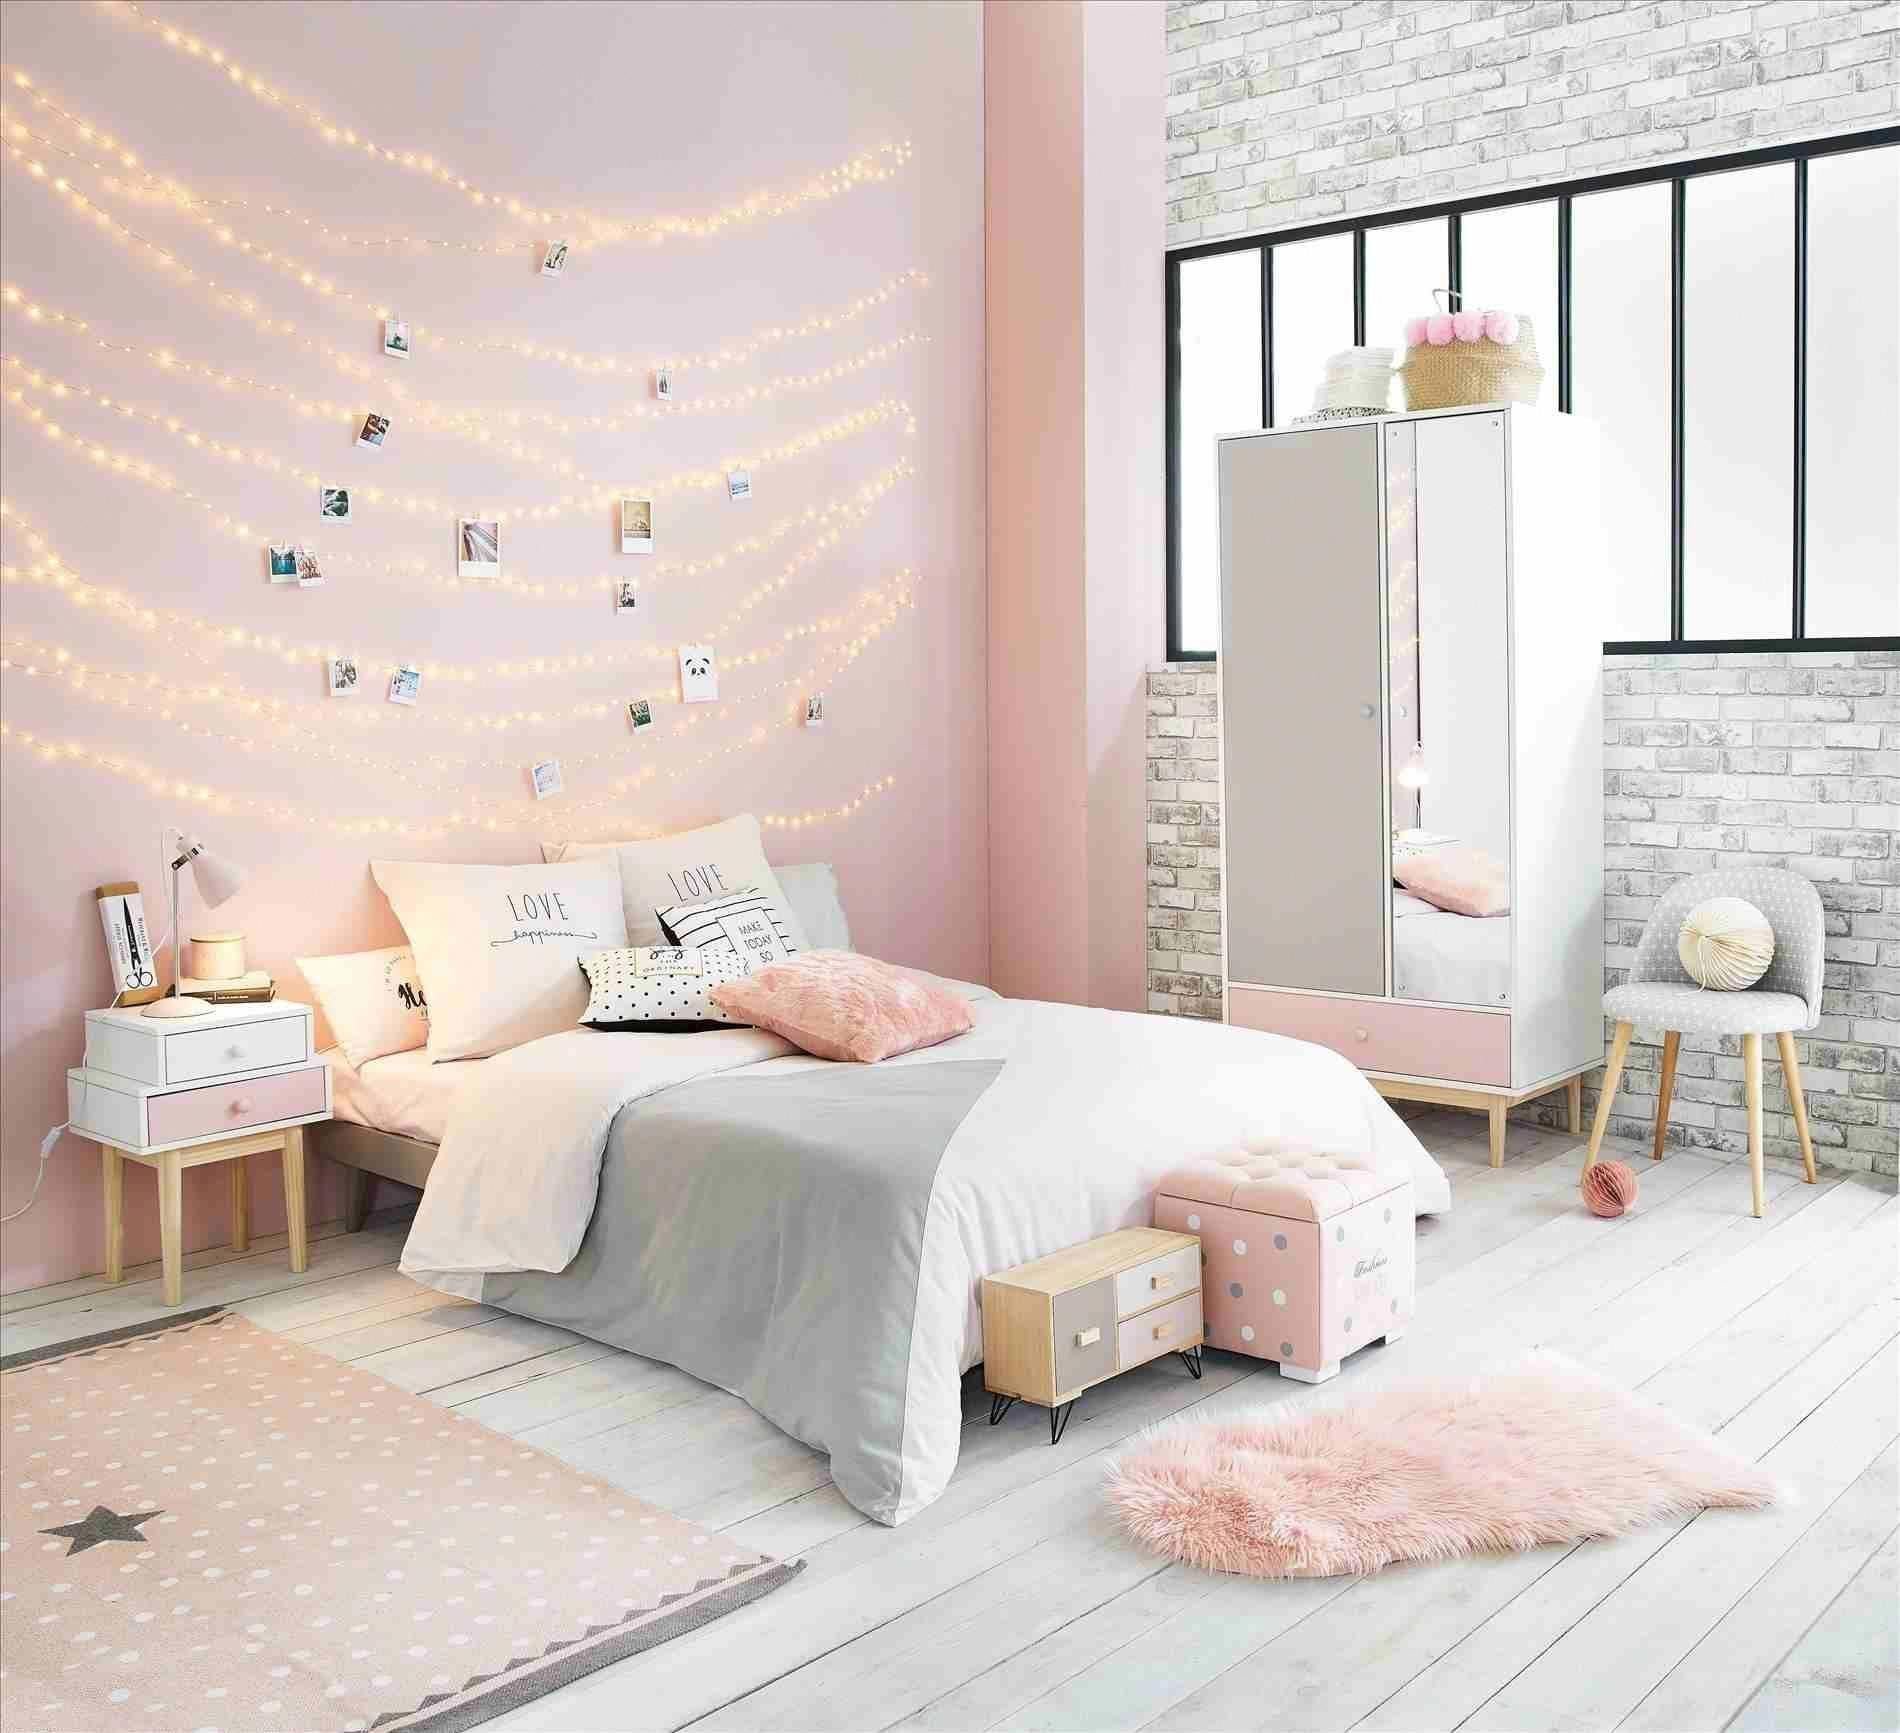 Sự kết hợp ấn tượng giữa hai gam màu xám ghi và hồng pastel cũng đèn dây trang trí tạo sự ấm áp cho căn phòng ngủ của bạn